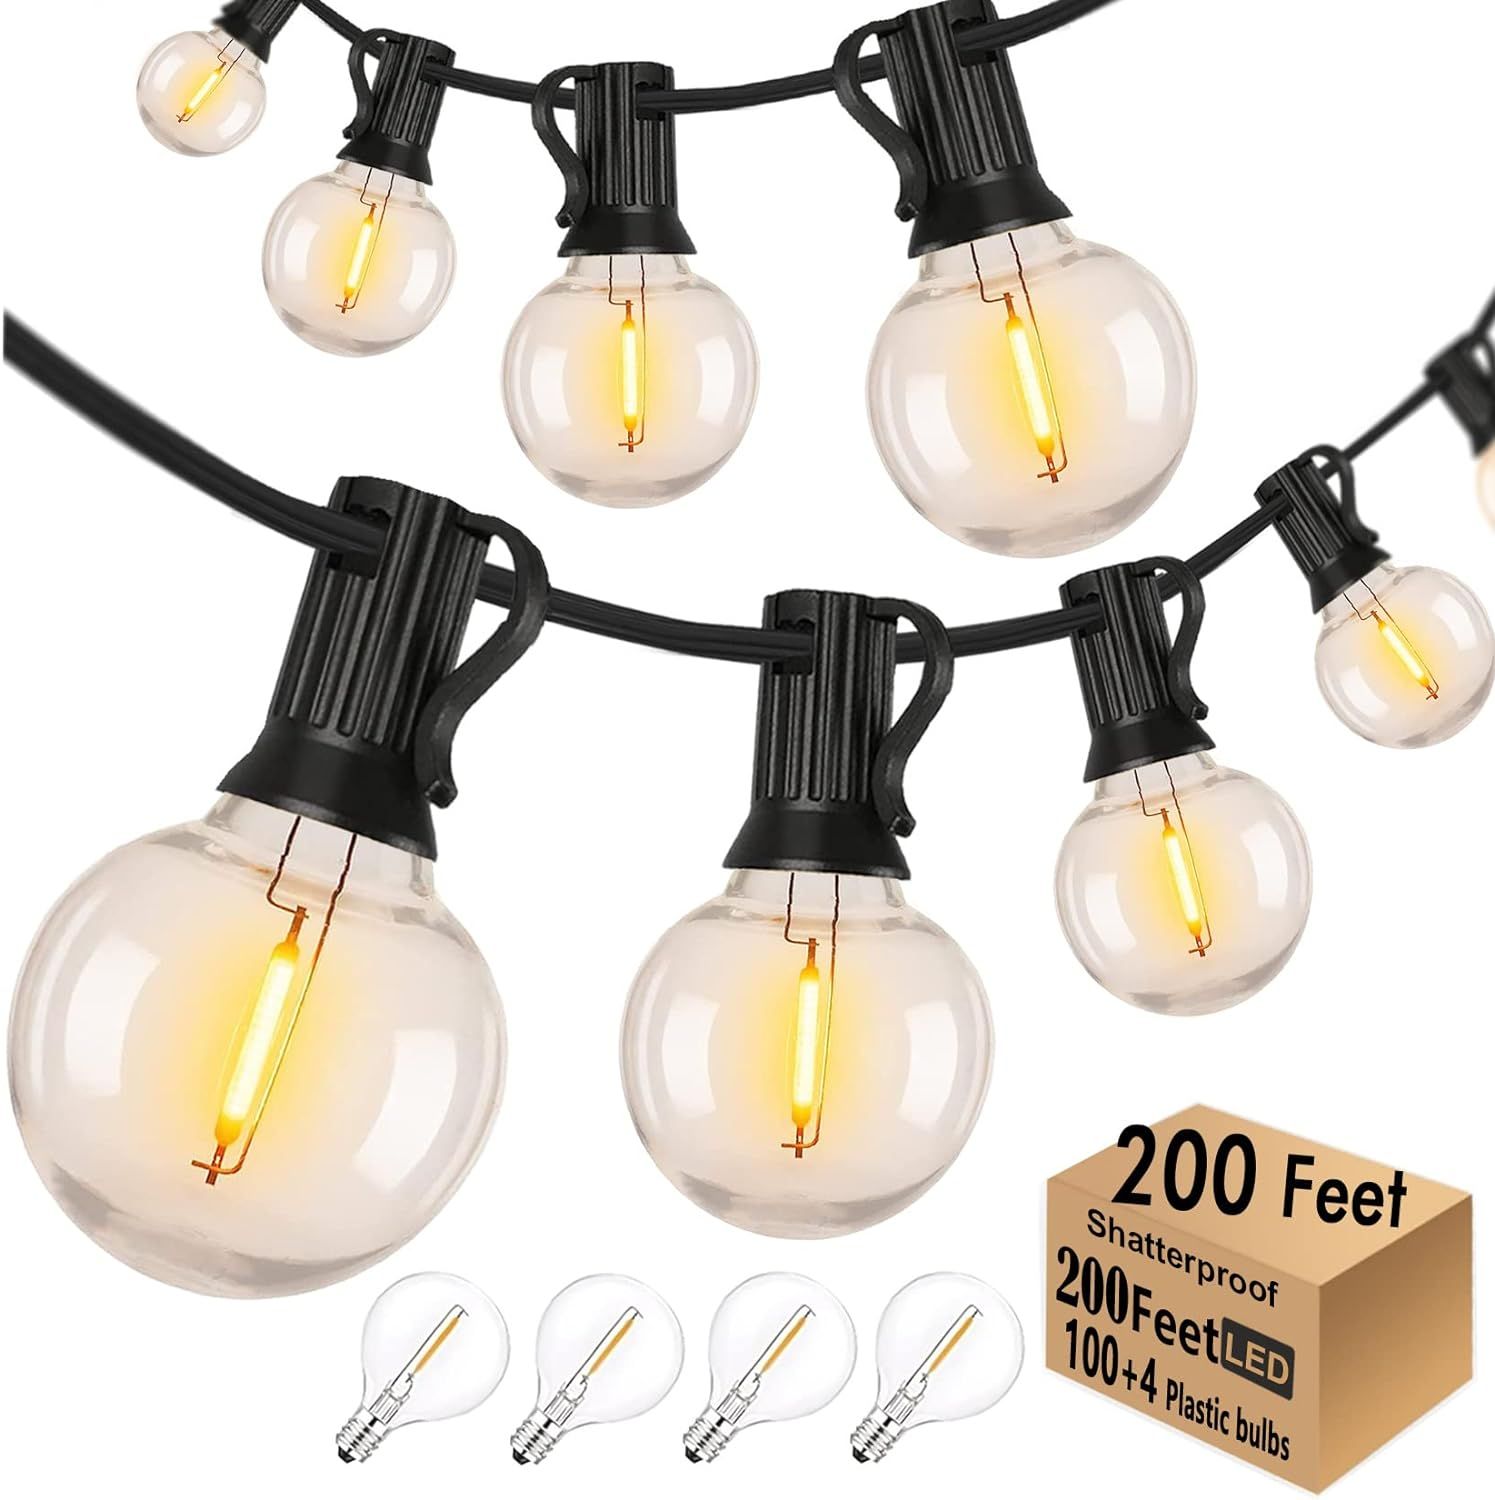 Skeerei Outdoor String Lights 200FT Waterproof Patio Bistro Lights with 100+4 Shatterproof G40 LE... | Amazon (US)